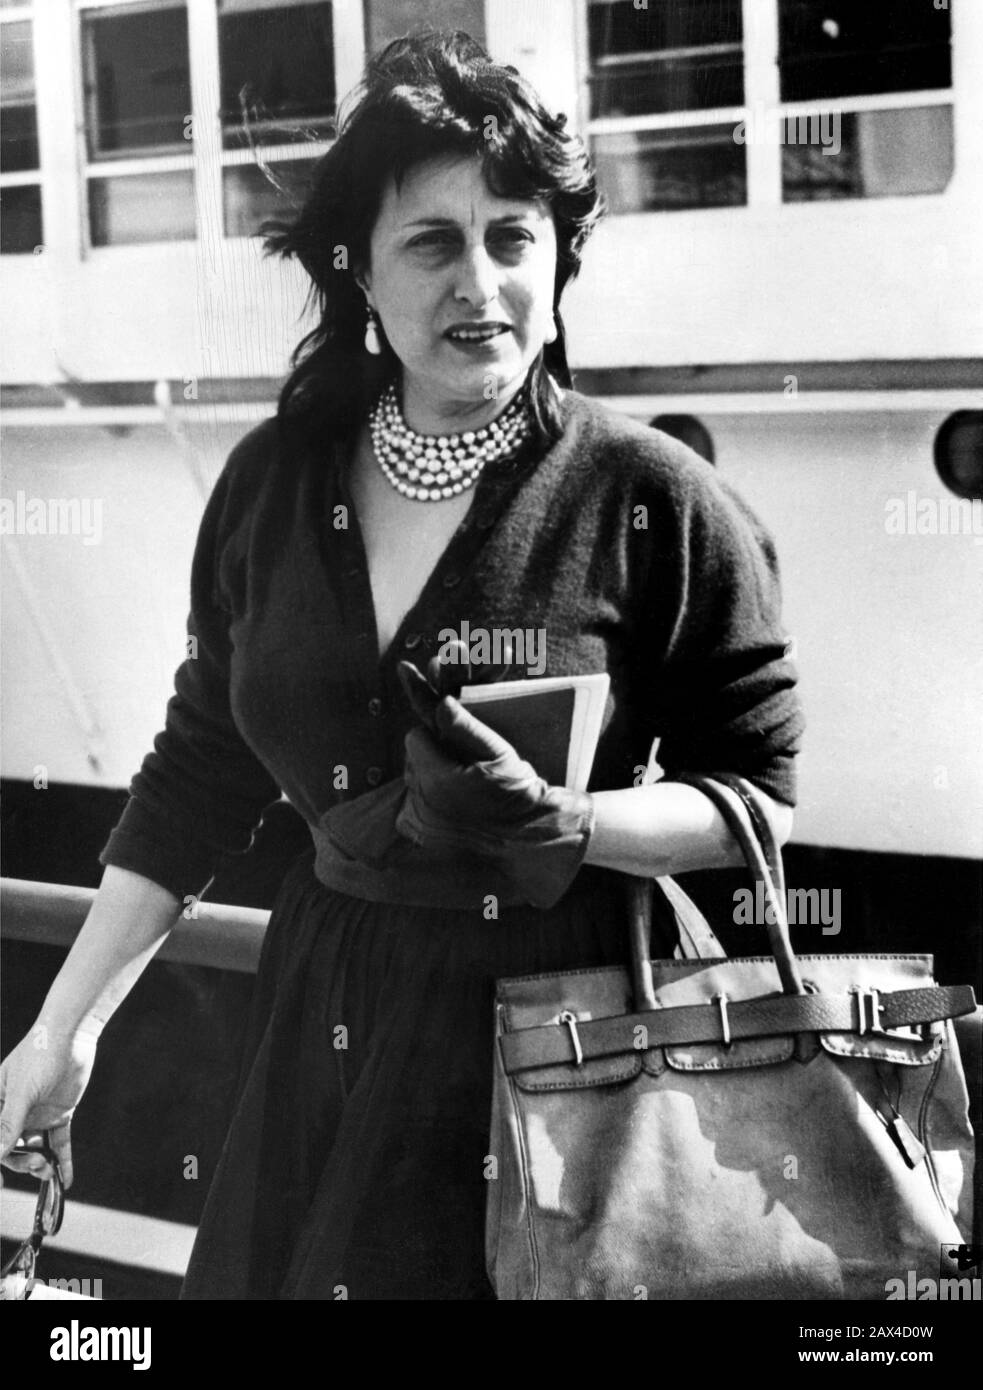 1953 , 4 april , NAPLES , ITALY : The italian movie actress ANNA  MAGNANI before sailing on the italian liner ANDREA DORIA from Napoli to USA . Magnani was on the way to USA where she will help to publicize her latest film  THE GOLDEN COUCH ( La carrozza d'oro - La Carosse d'or ) by Jean Renoir  - CINEMA - FILM -  MOVIE - PORTRAIT - RITRATTO  - black dress - abito vestito nero - pearls necklace - collana di perle - gloves - guanti - borsa - borsetta - sac - bag - orecchini - eardrops - TRANSATLANTICO  --- ONLY EDITORIAL USE --- NOT FOR ADVERTISING USE --- NON PER USO PUBBLICITARIO ---  Archivi Stock Photo